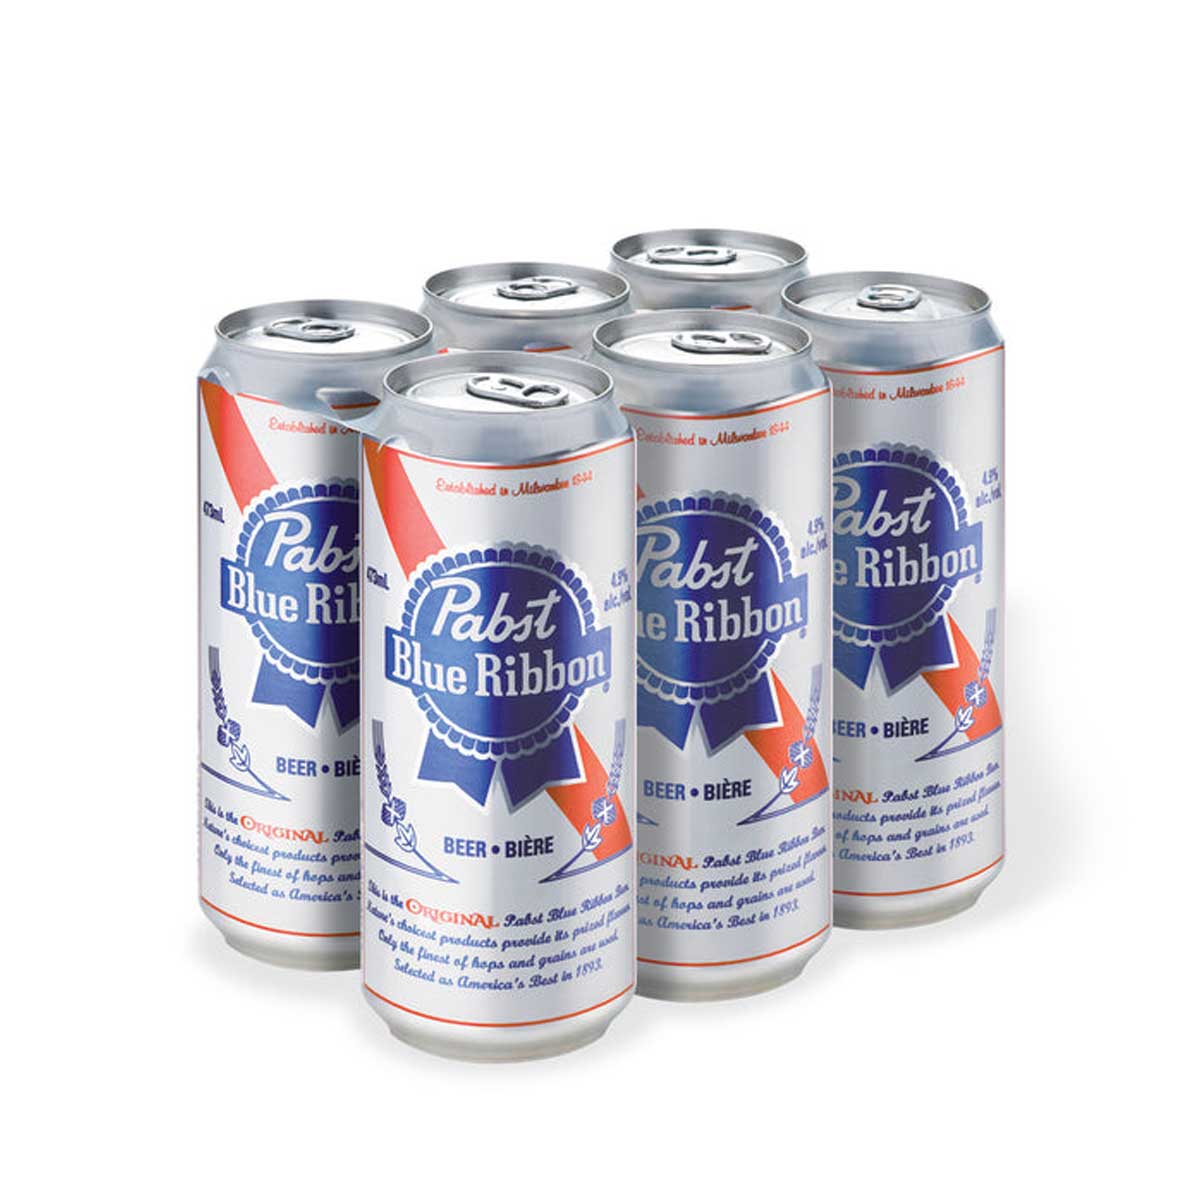 Pabst Blue Ribbon Lager 16 oz cans- 6 pack - Beverages2u